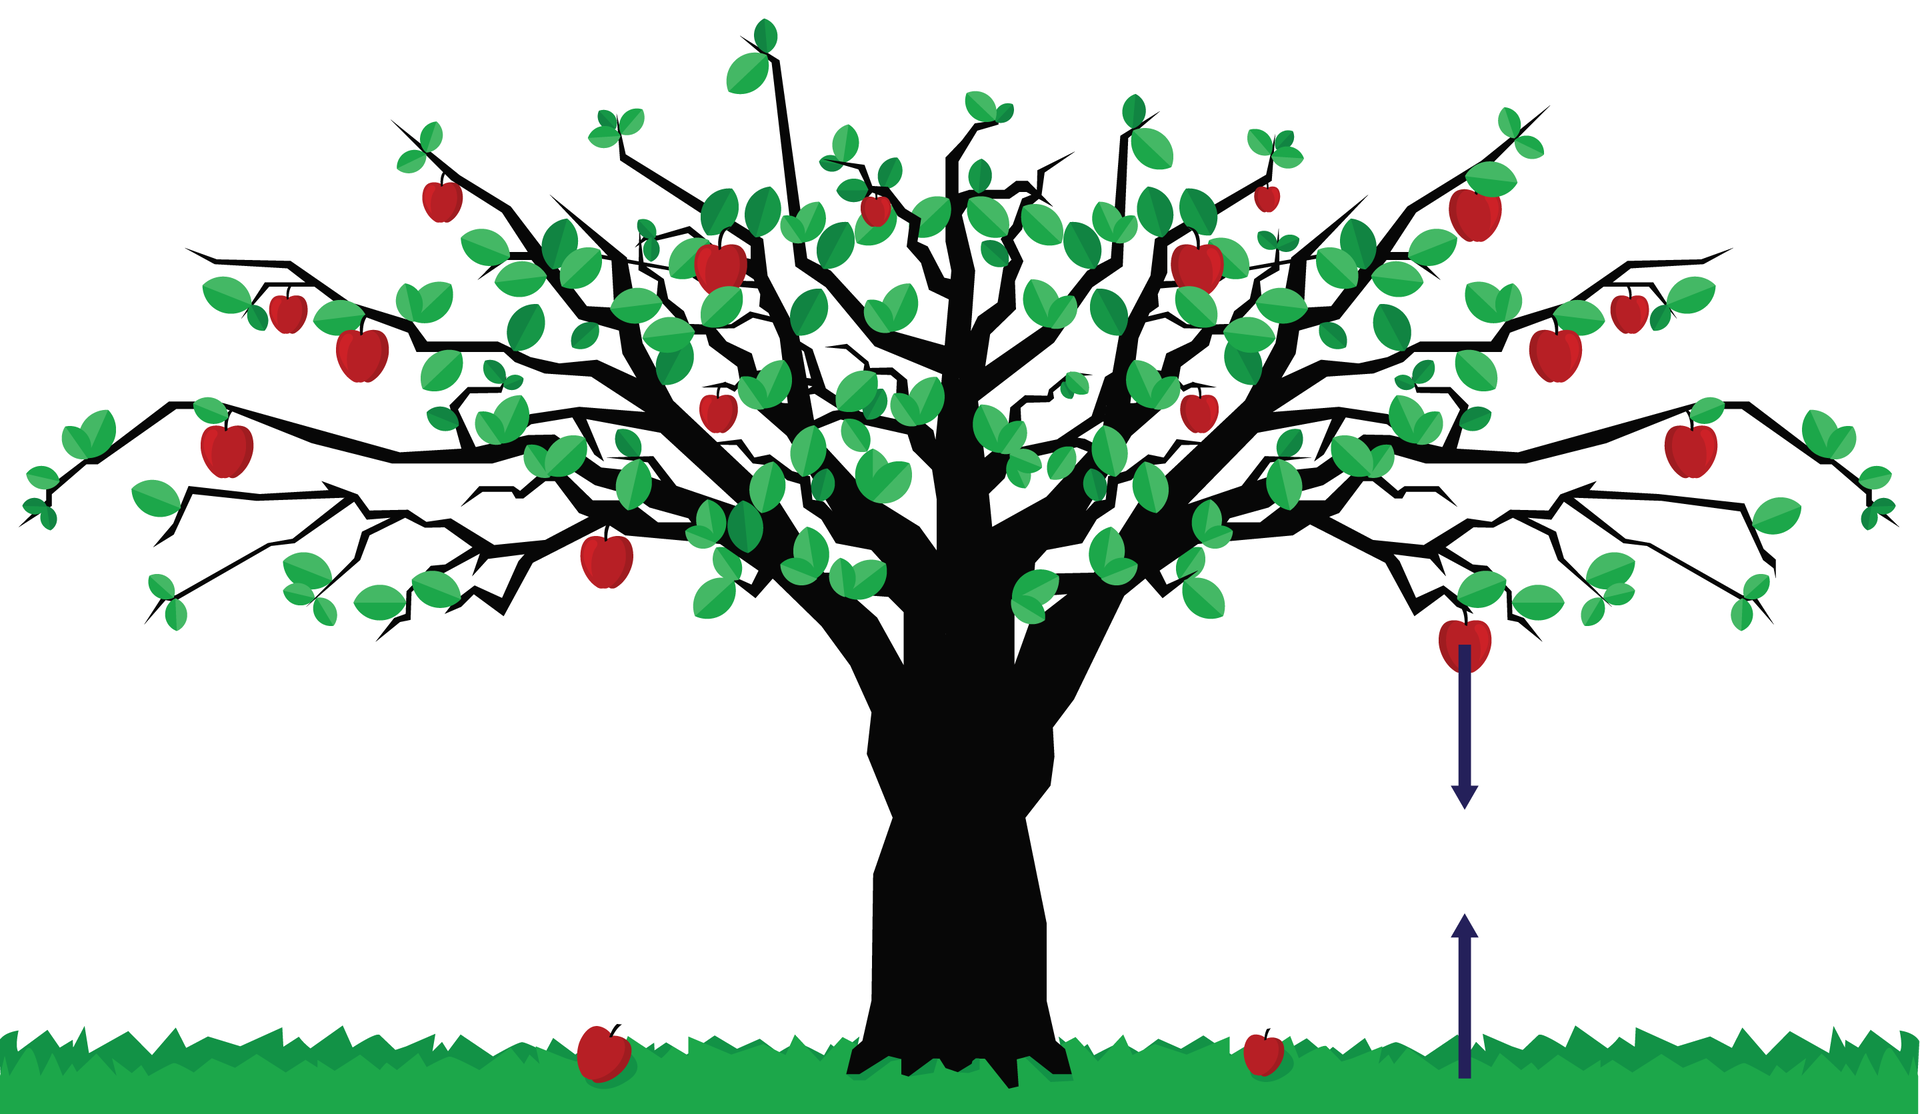 Na ilustracji zaprezentowano drzewo stojące na trawie. Korona drzewa rozłożysta, zajmuje całą szerokość rysunku. Na gałęziach znajdują się liście i jabłka. Z prawej strony drzewa, od jednego z jabłek odchodzi wektor. Kierunek prostopadły do podłoża. Zwrot ku ziemi. Punkt przyłożenia na środku jabłka. Punkt przyłożenia drugiego wektora znajduje się na ziemi. Wektor ma ten sam kierunek, lecz przeciwny zwrot. Wektory mają równą długość. Oba wektory leżą na tej samej prostej.